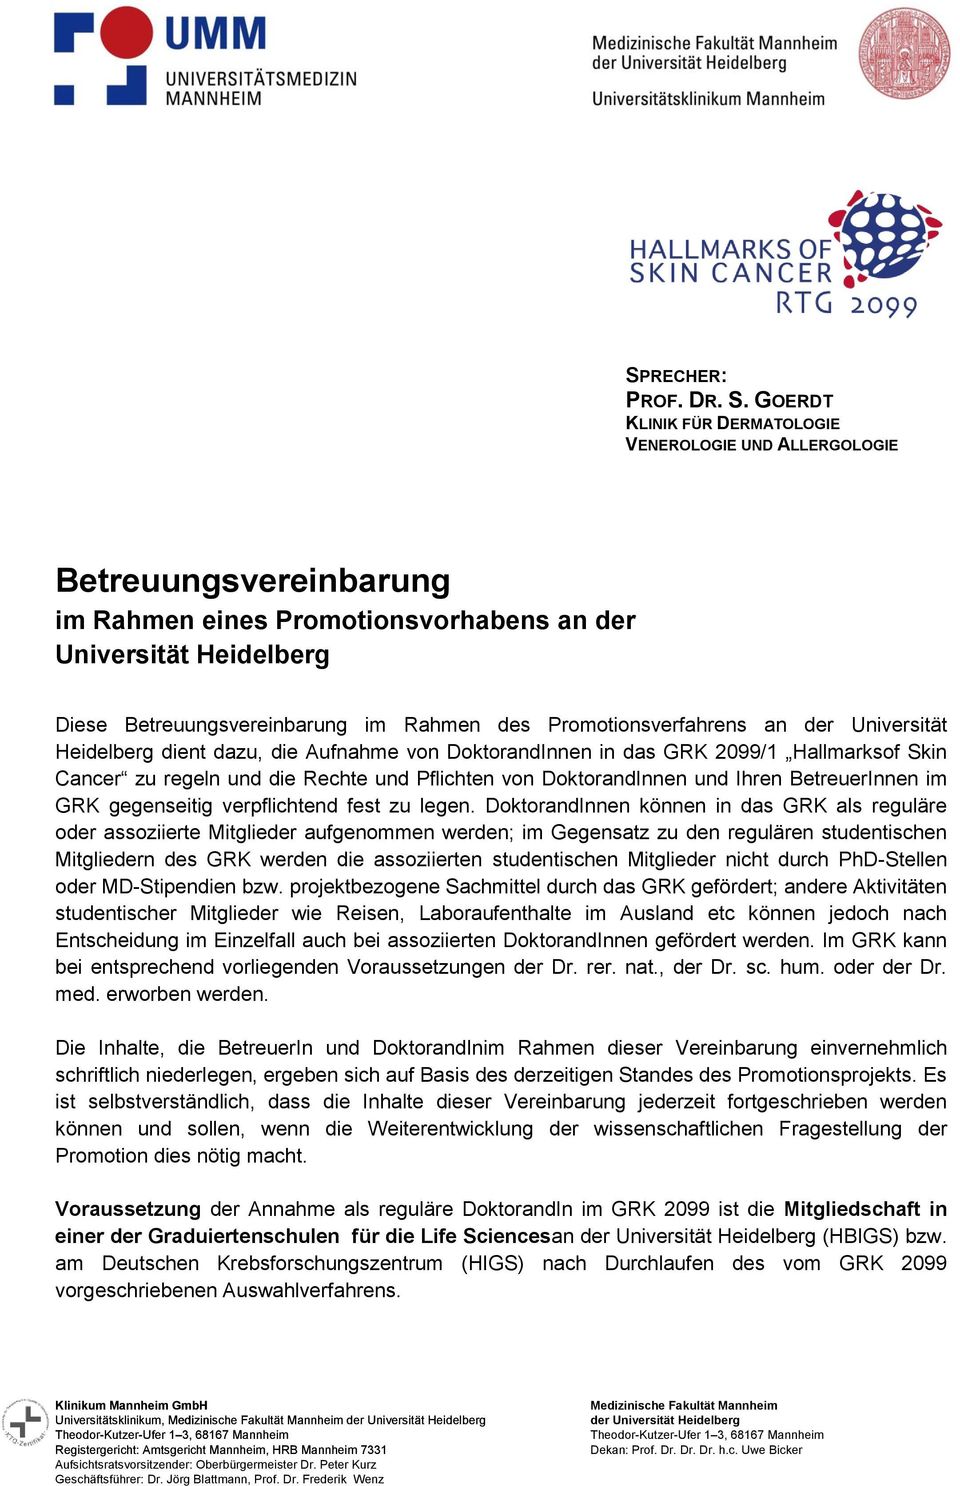 Promotionsverfahrens an der Universität Heidelberg dient dazu, die Aufnahme von DoktorandInnen in das GRK 2099/1 Hallmarksof Skin Cancer zu regeln und die Rechte und Pflichten von DoktorandInnen und